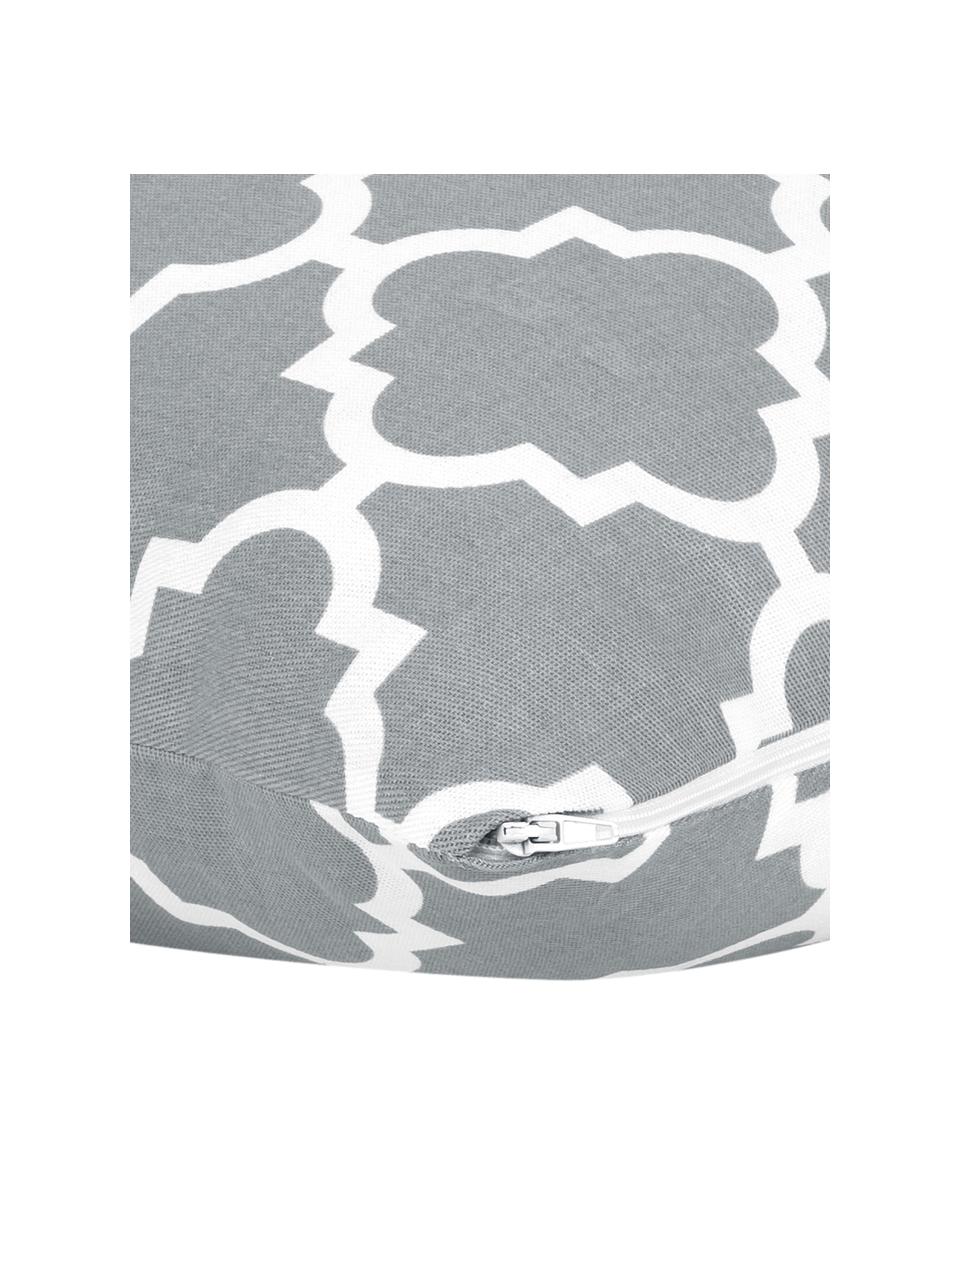 Kissenhülle Lana in Grau mit grafischem Muster, 100% Baumwolle, Hellgrau, Weiß, B 30 x L 50 cm